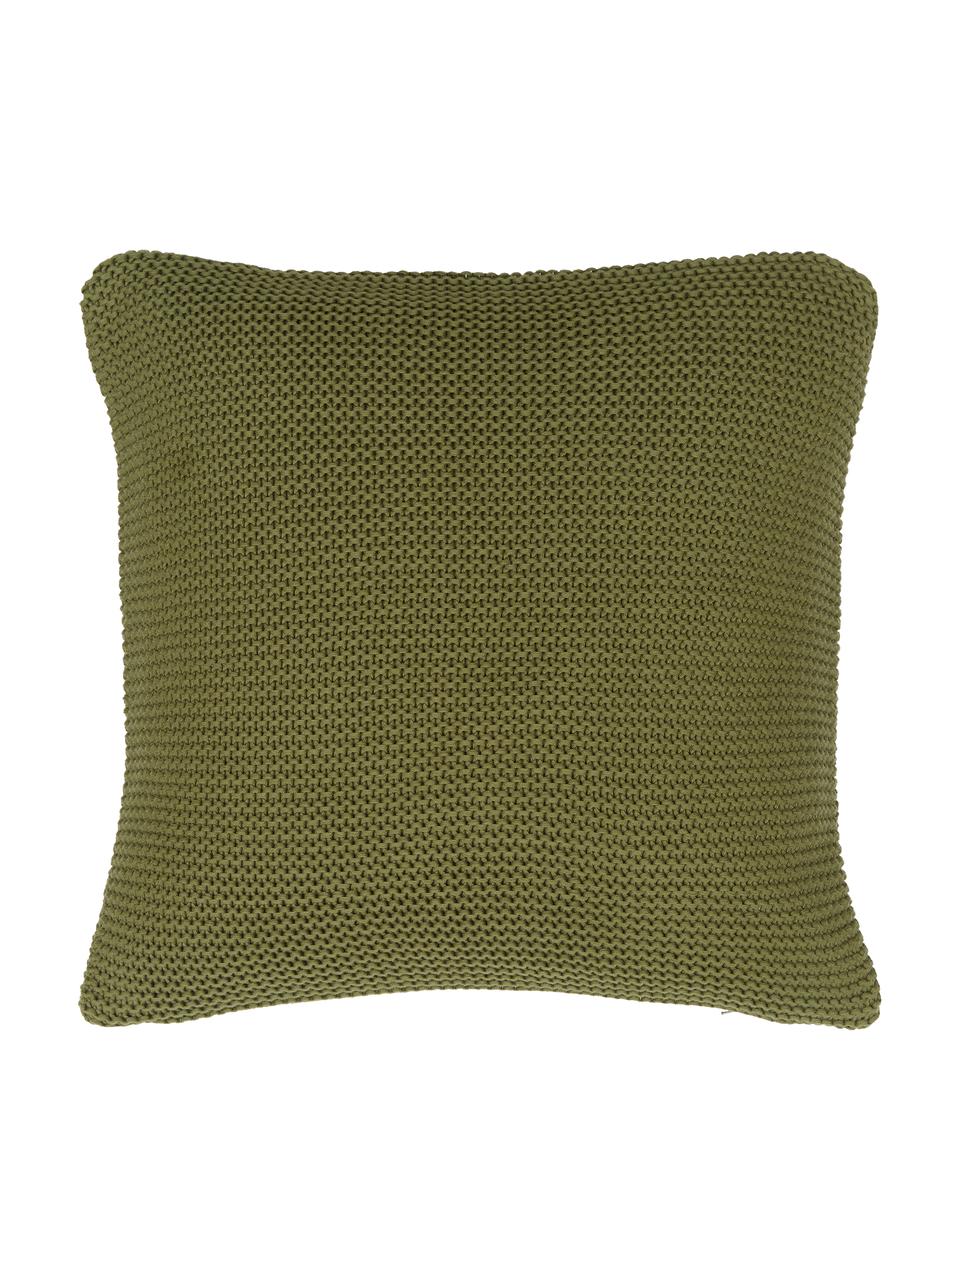 Copricuscino a maglia in cotone organico Adalyn, 100% cotone organico certificato GOTS, Verde, Larg. 50 x Lung. 50 cm